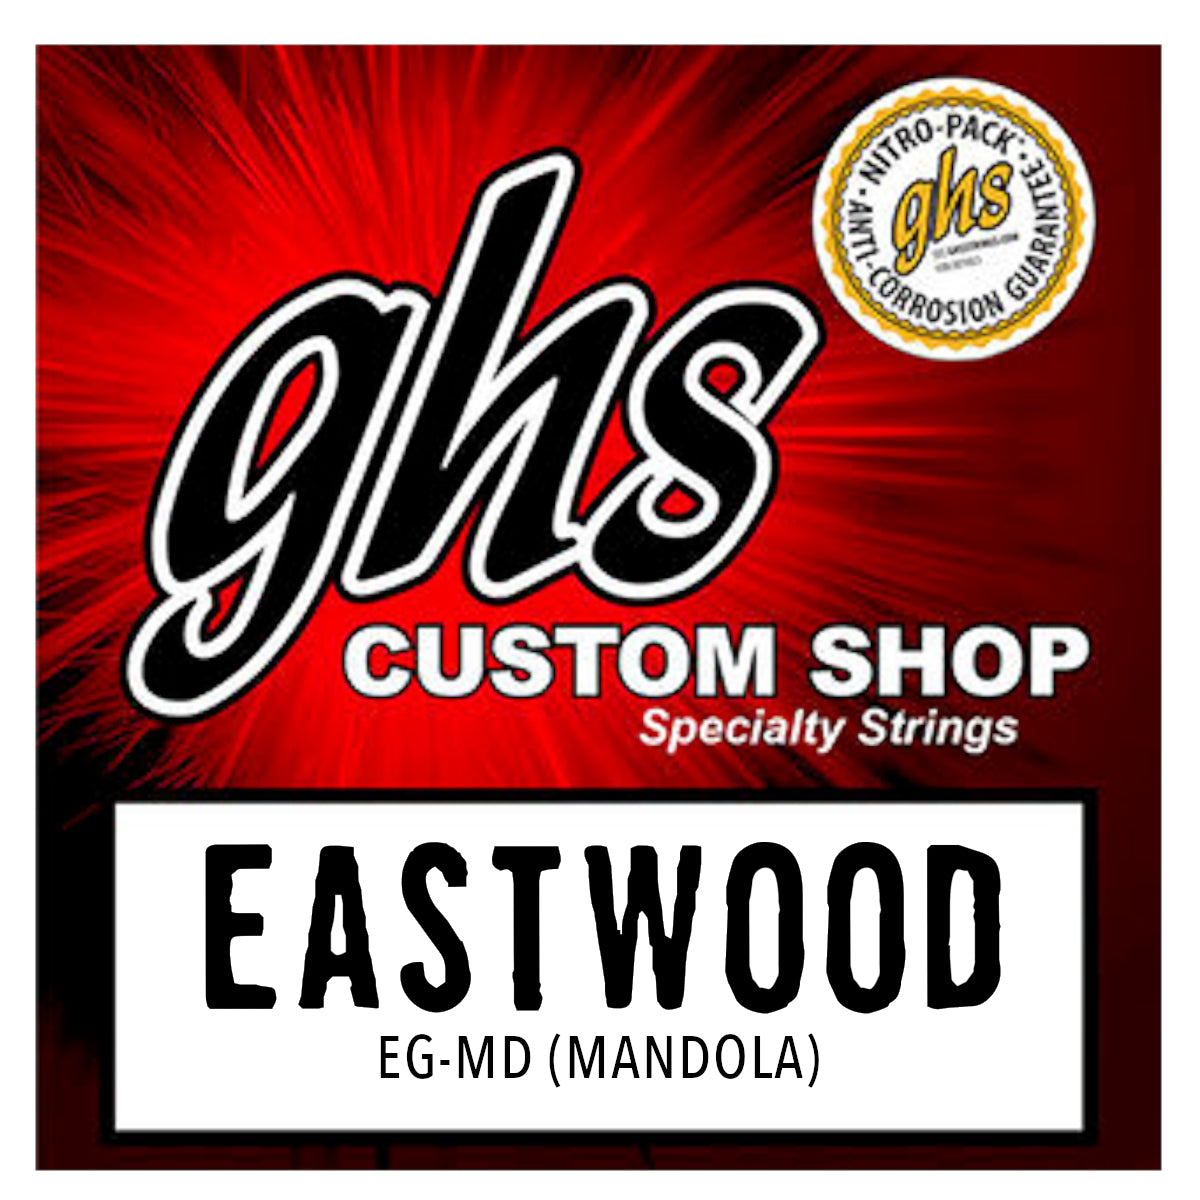 Eastwood/GHS Custom Strings - Mandola